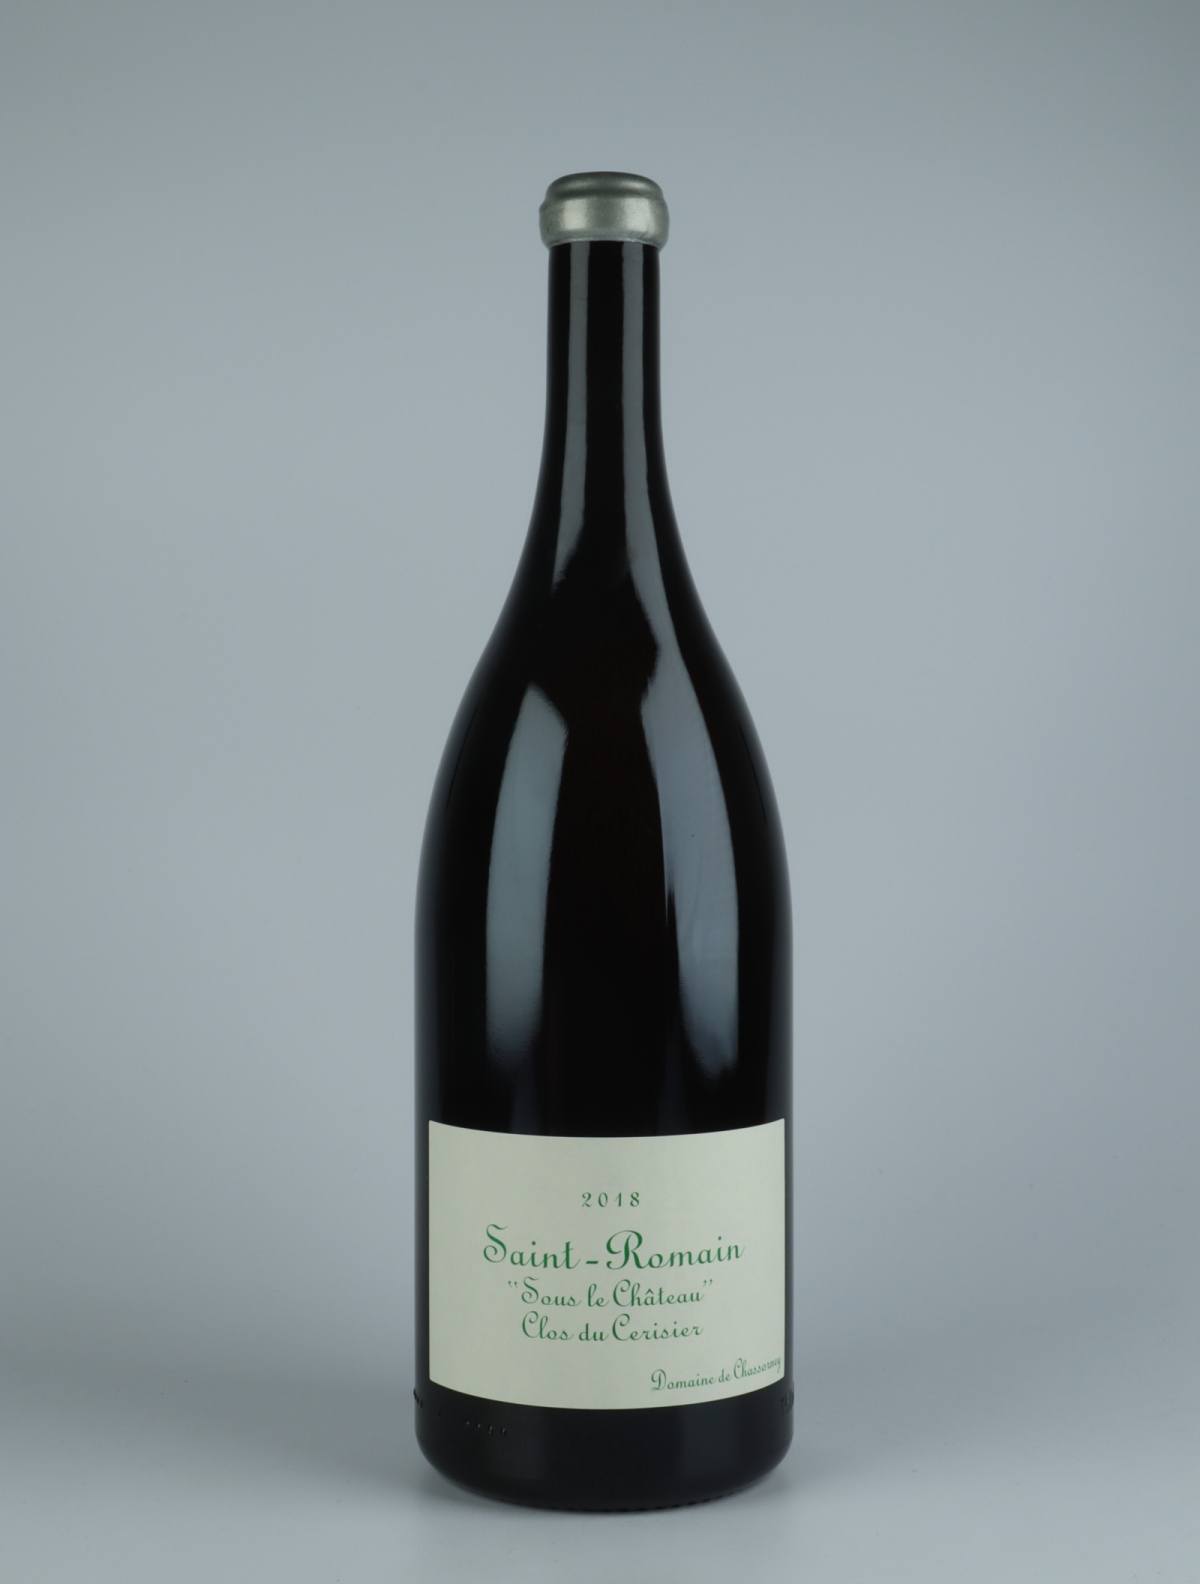 A bottle 2018 Saint Romain Blanc - Clos du Cerisier White wine from , Burgundy in France